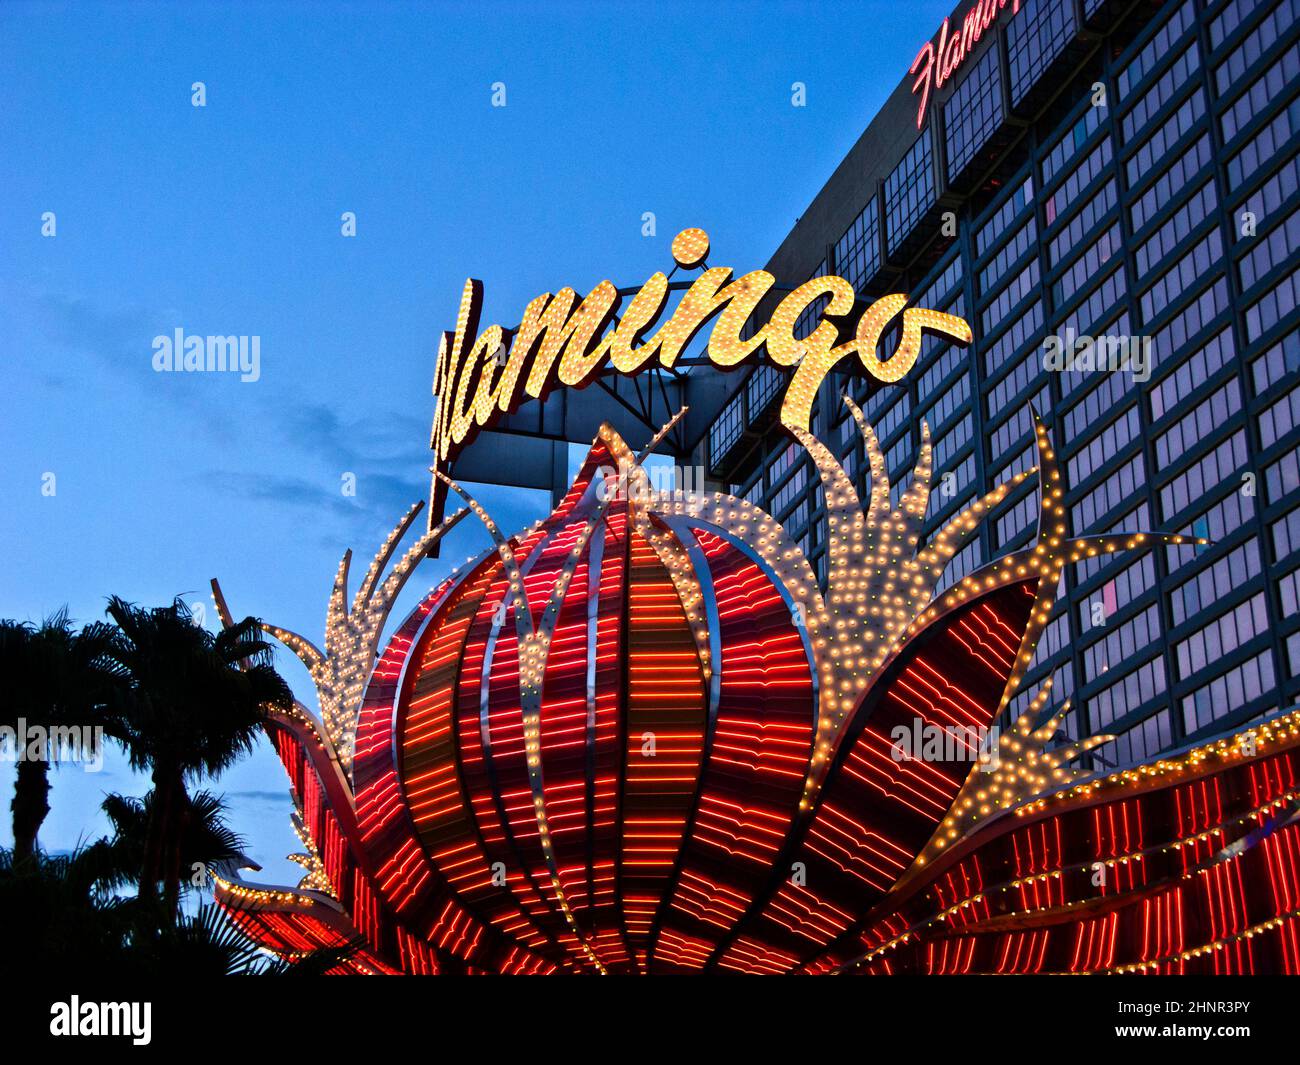 Flamingo Hotel e il gioco d'azzardo sul Las Vegas Strip Foto Stock